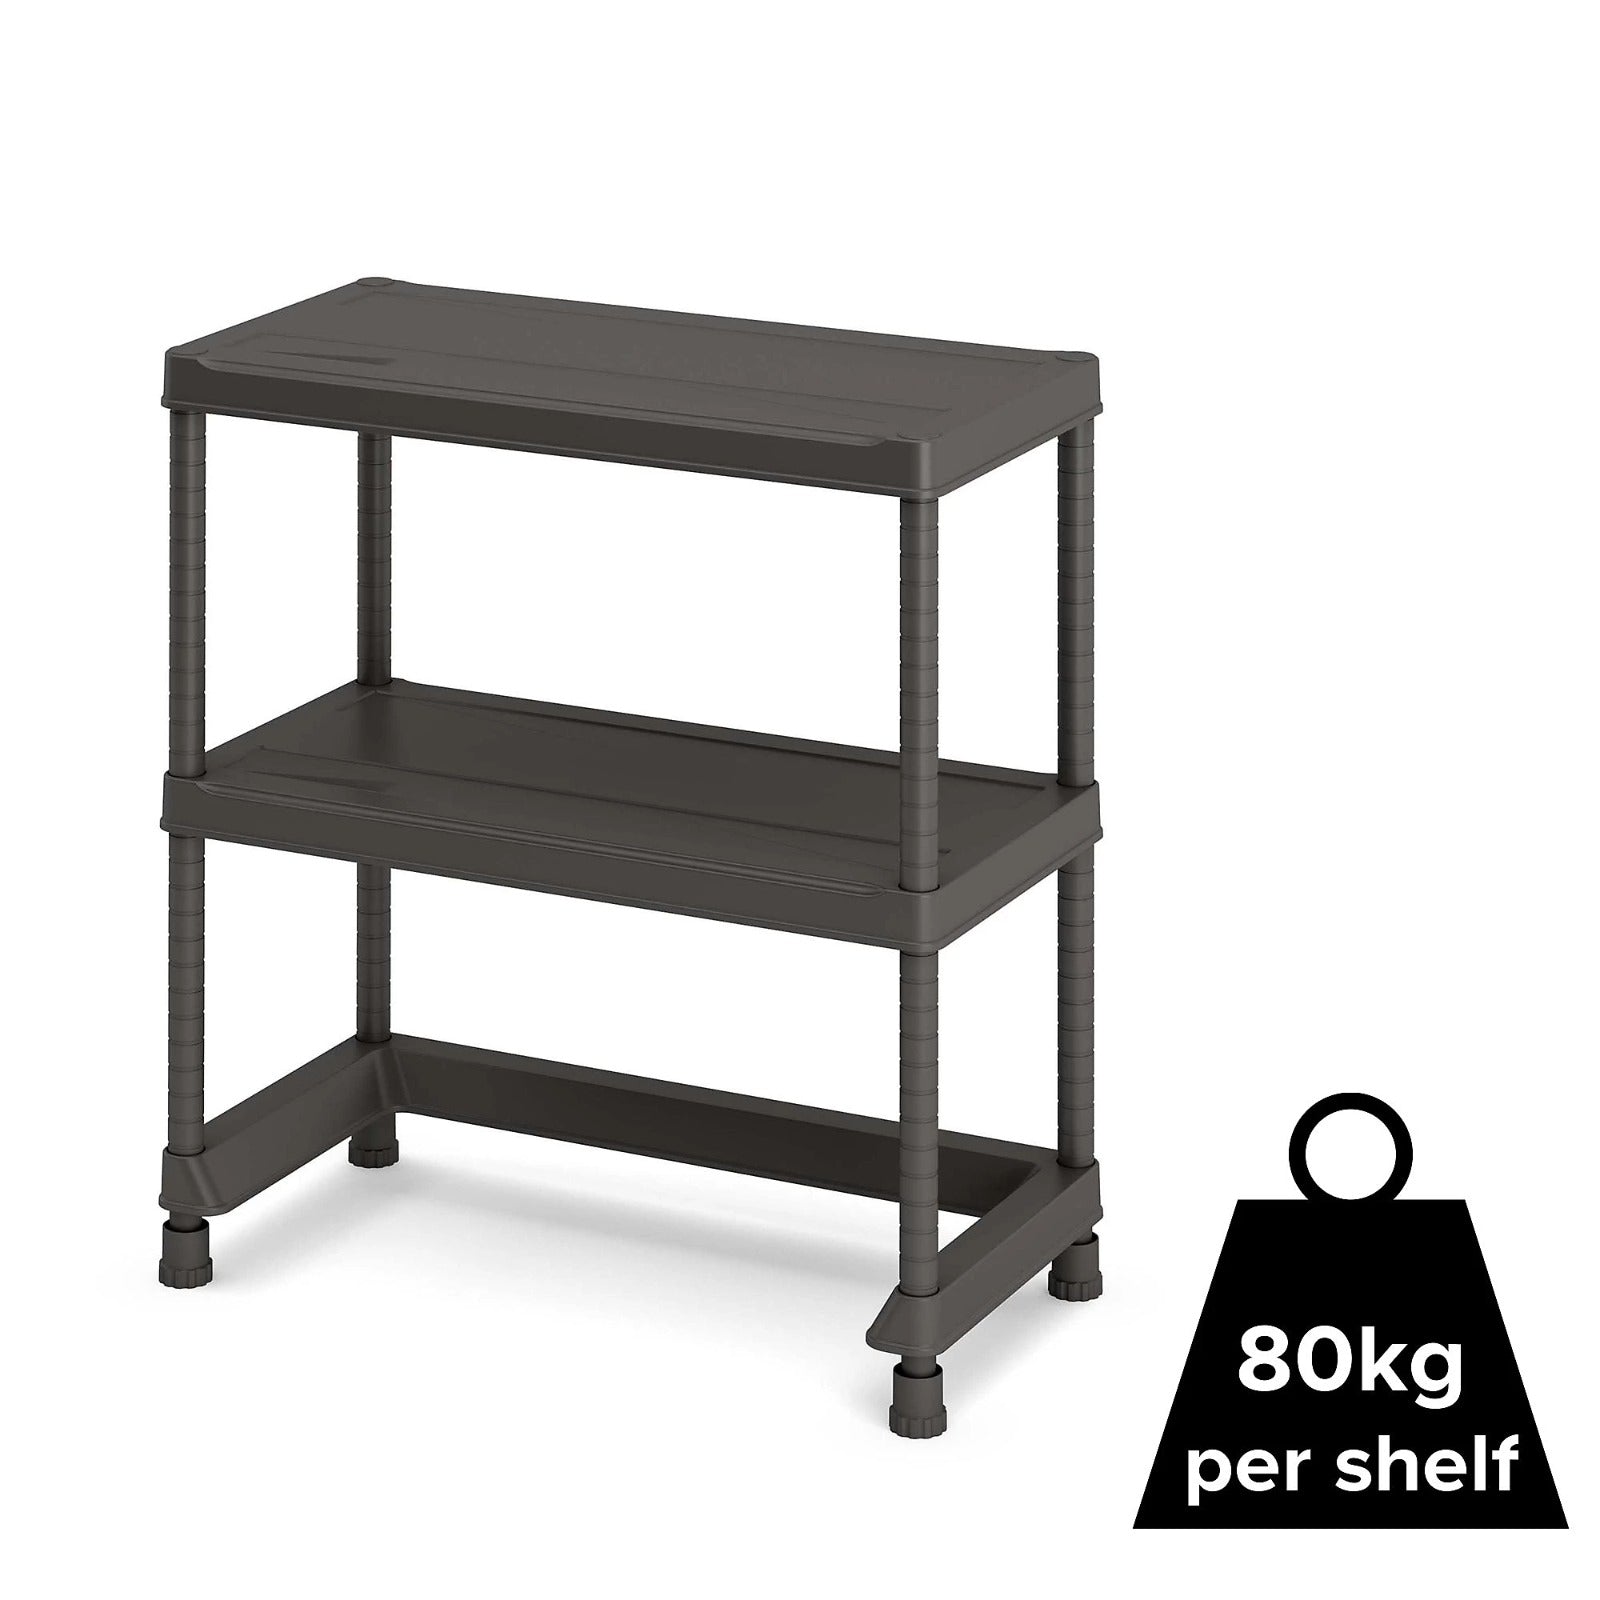 5 shelf Chipboard & steel Shelving unit (H)1800mm (W)900mm - 09011